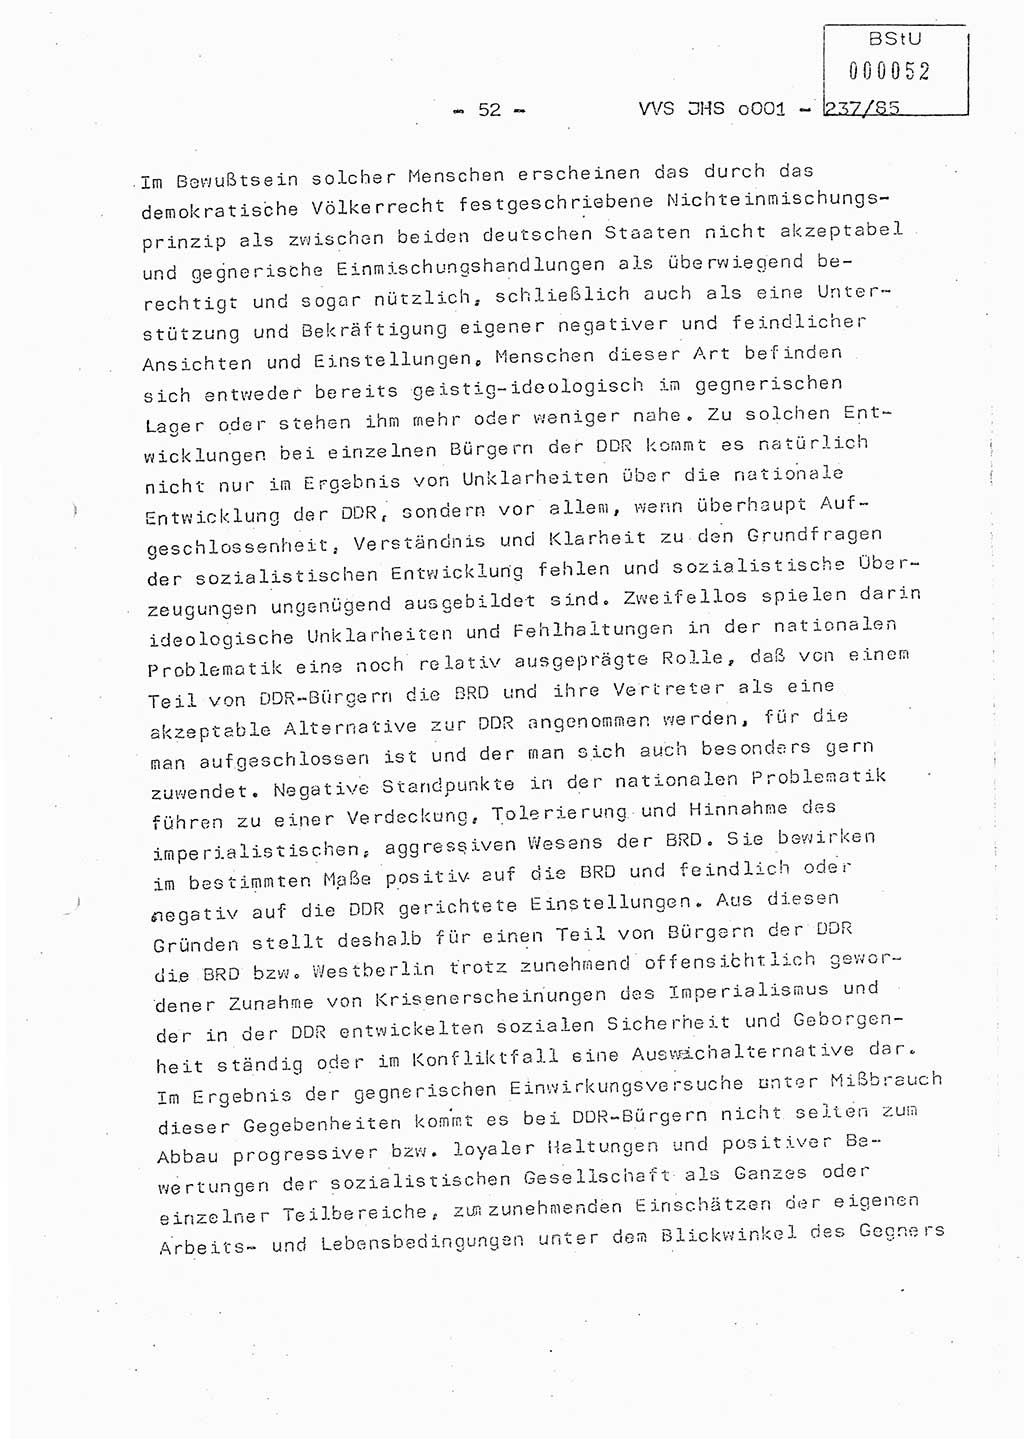 Dissertation Oberstleutnant Peter Jakulski (JHS), Oberstleutnat Christian Rudolph (HA Ⅸ), Major Horst Böttger (ZMD), Major Wolfgang Grüneberg (JHS), Major Albert Meutsch (JHS), Ministerium für Staatssicherheit (MfS) [Deutsche Demokratische Republik (DDR)], Juristische Hochschule (JHS), Vertrauliche Verschlußsache (VVS) o001-237/85, Potsdam 1985, Seite 52 (Diss. MfS DDR JHS VVS o001-237/85 1985, S. 52)